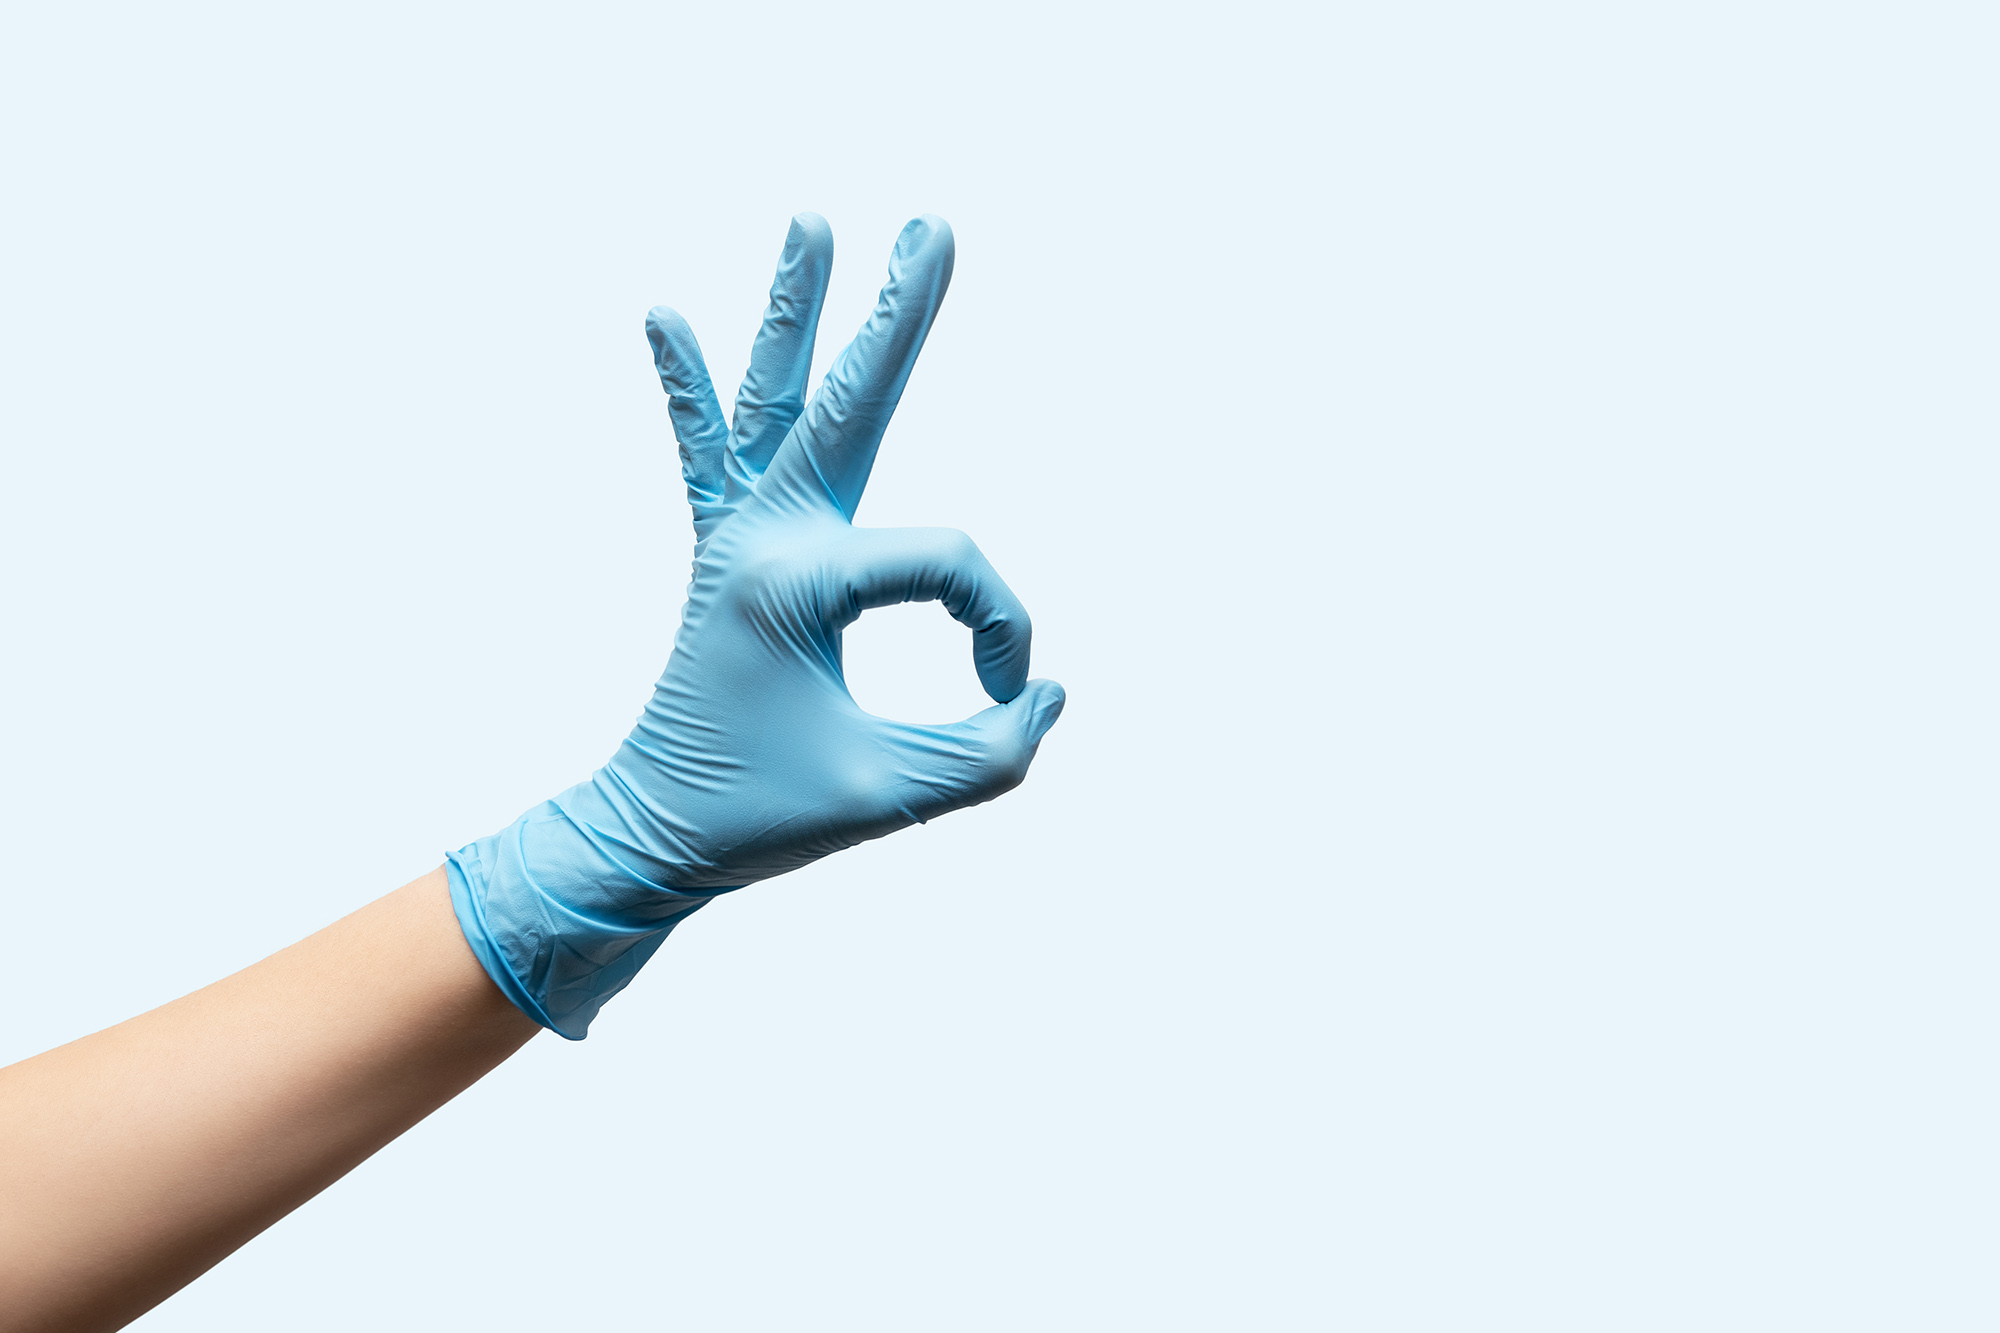 Alergia a los guantes de látex y su alternativa, los guantes de nitrilo